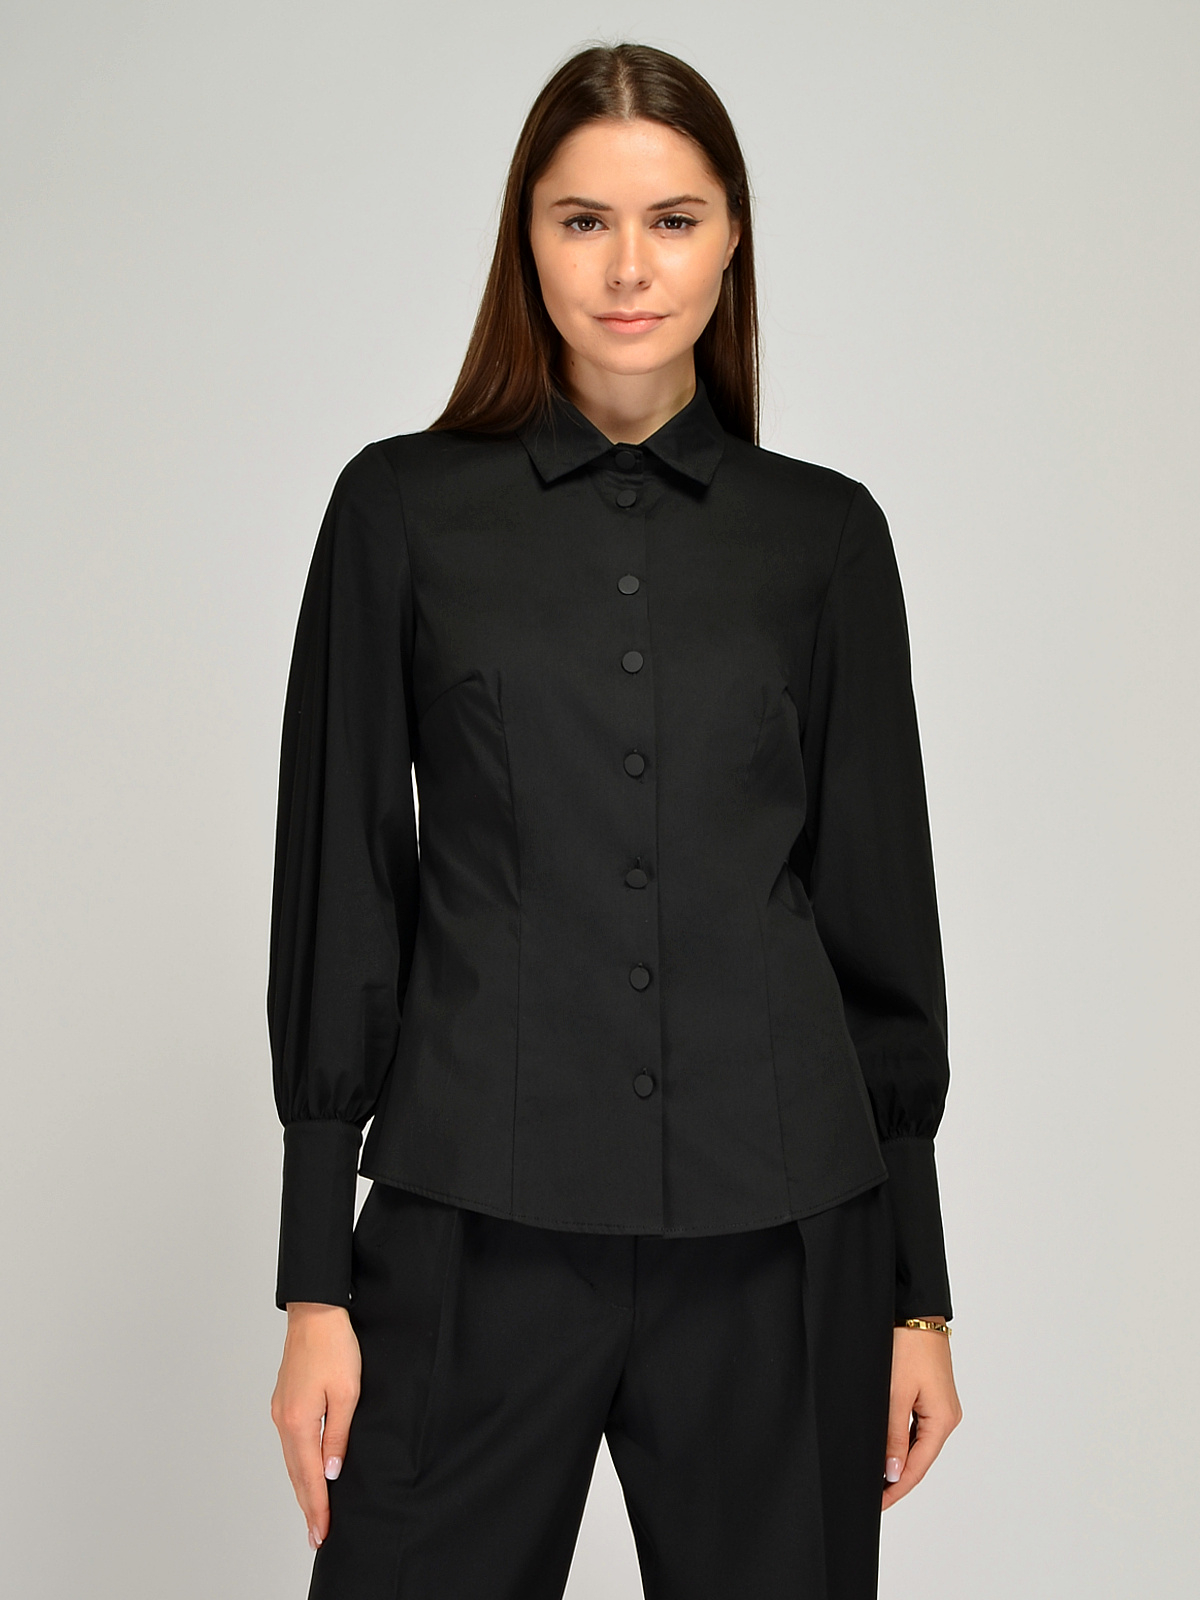 Блуза женская Каляев 66837 черная 44 RU